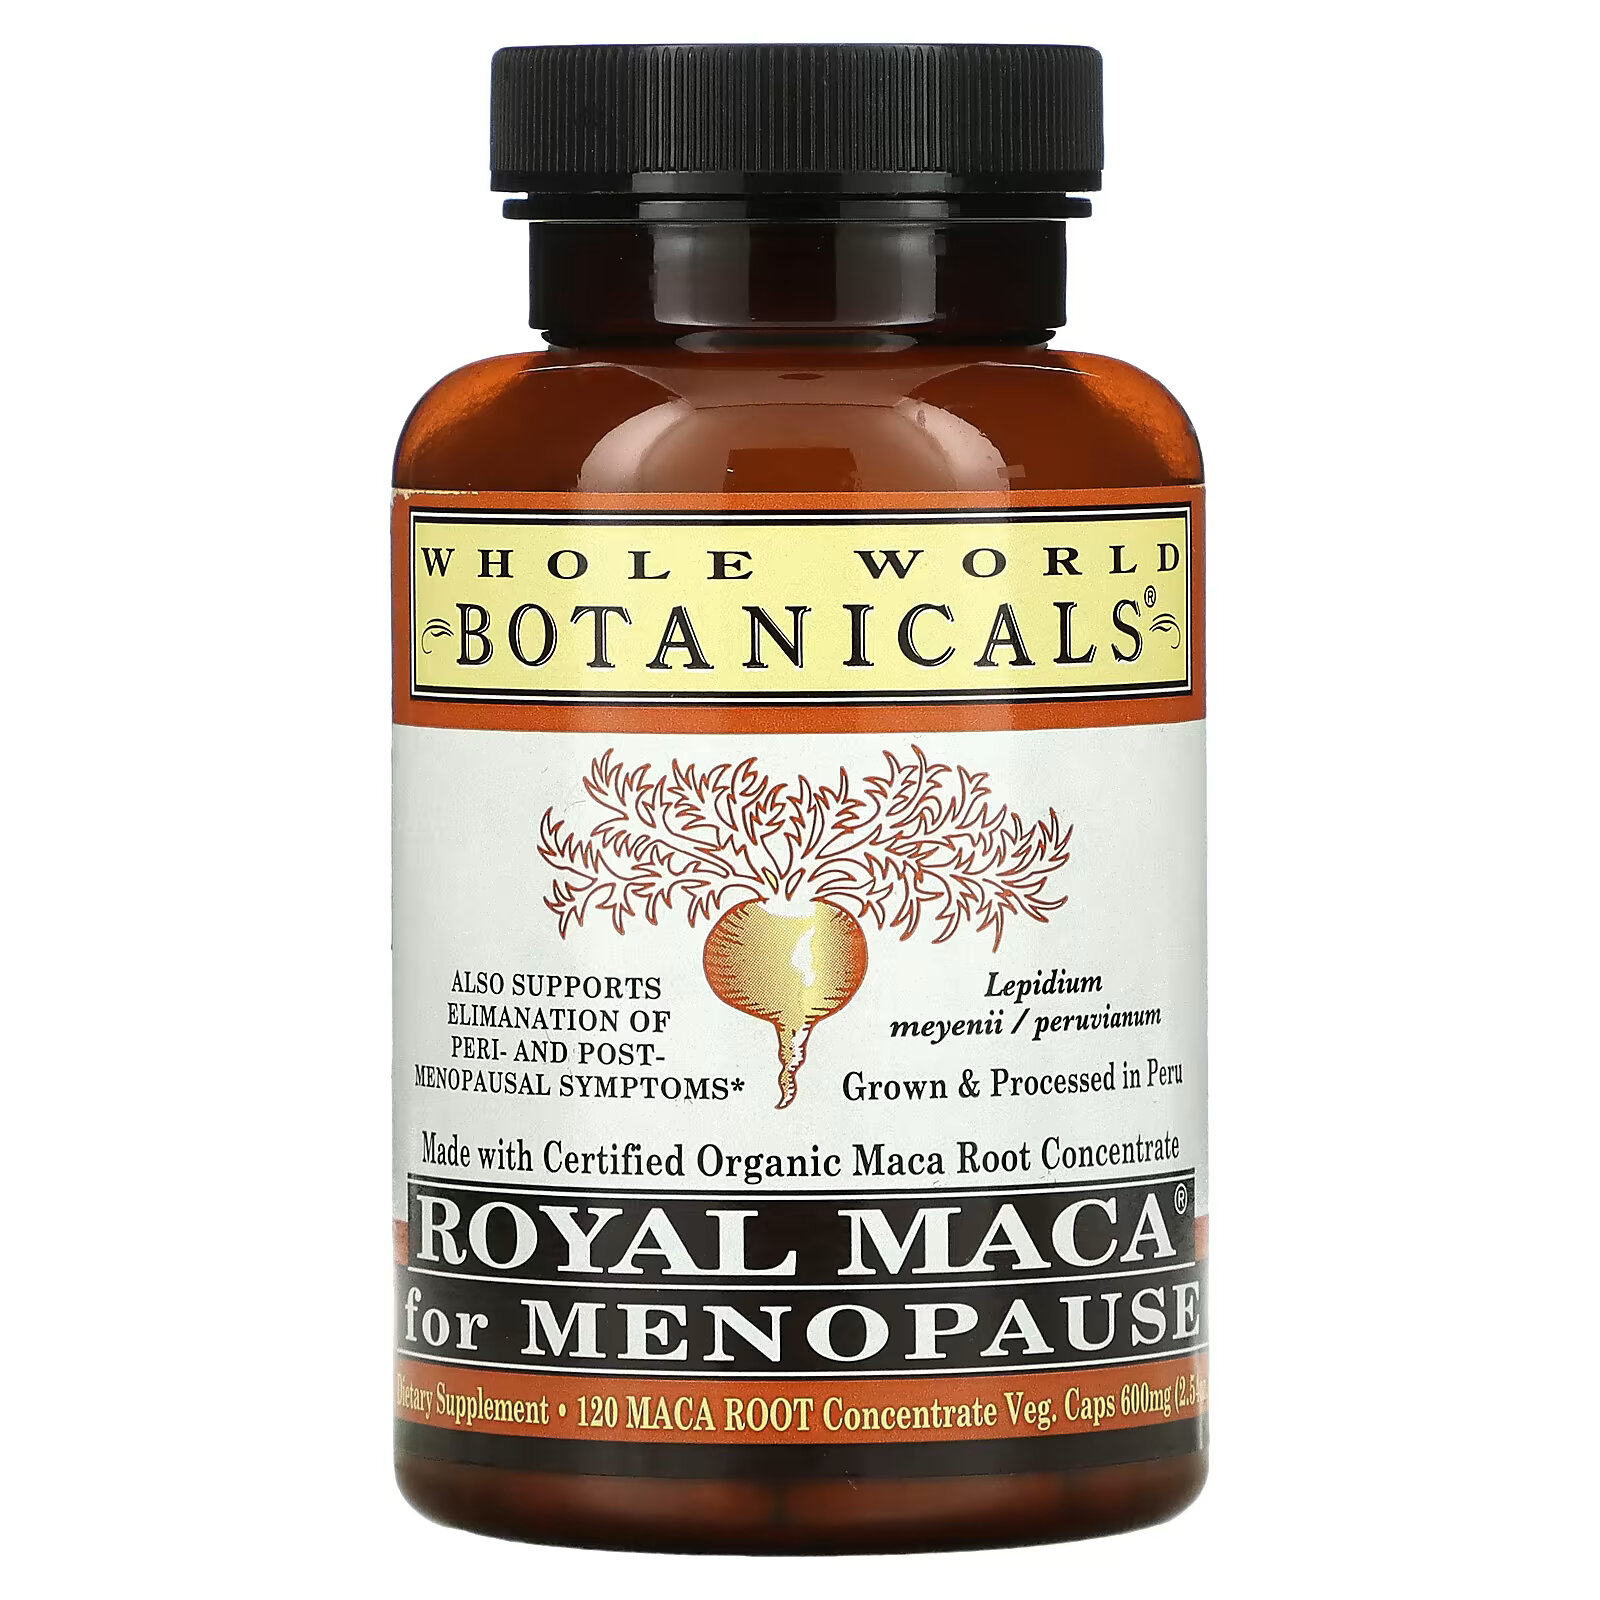 Whole World Botanicals, Royal Maca, королевская мака для приема при менопаузе, 500 мг, 120 вегетарианских капсул цена и фото